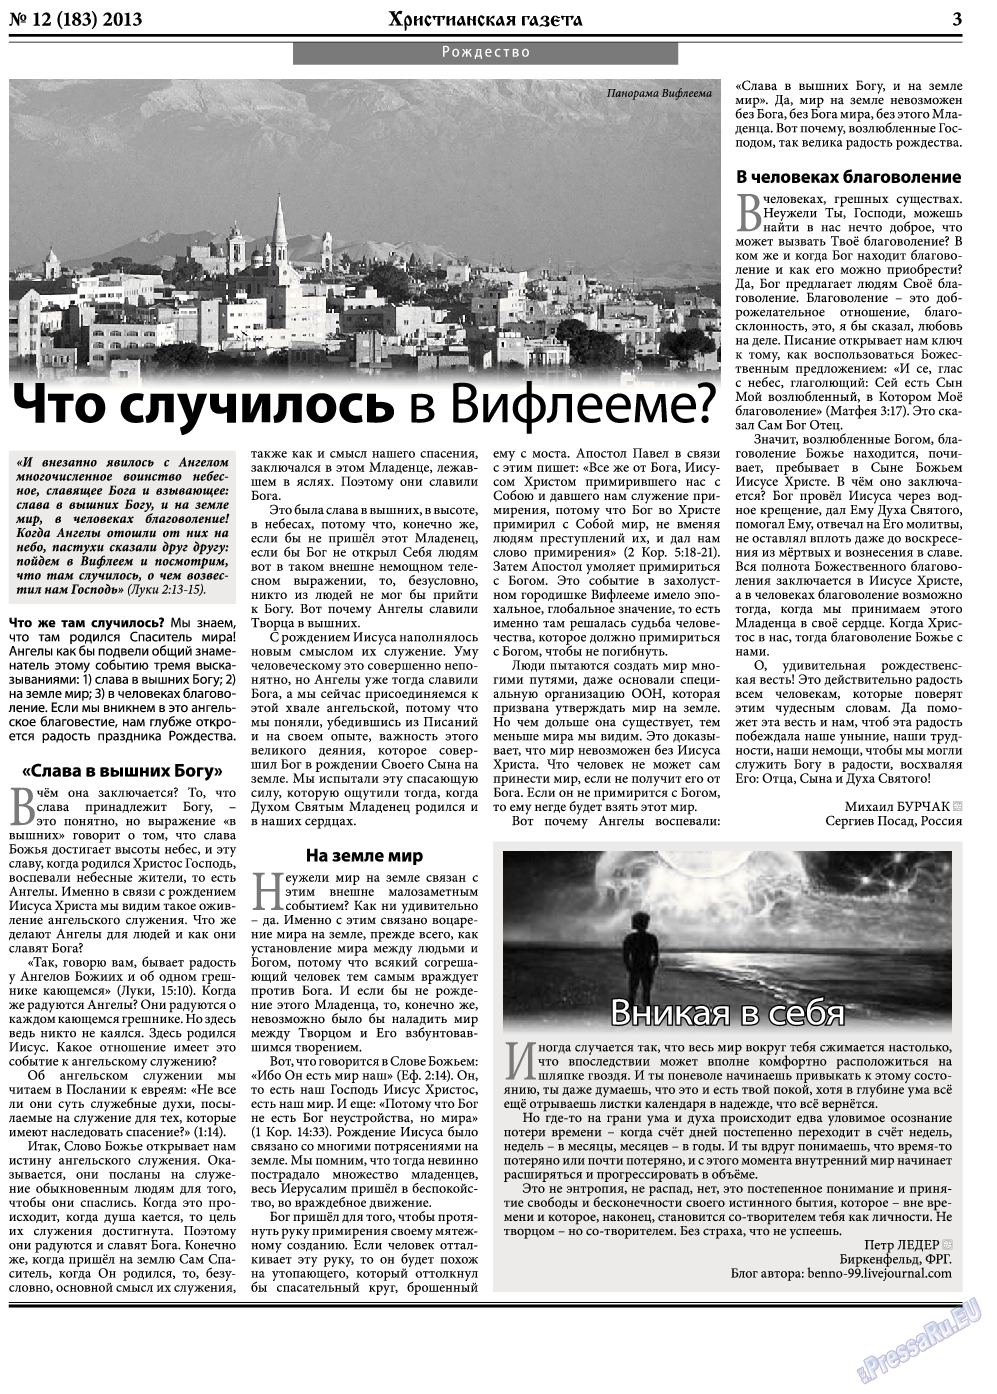 Христианская газета (газета). 2013 год, номер 12, стр. 3